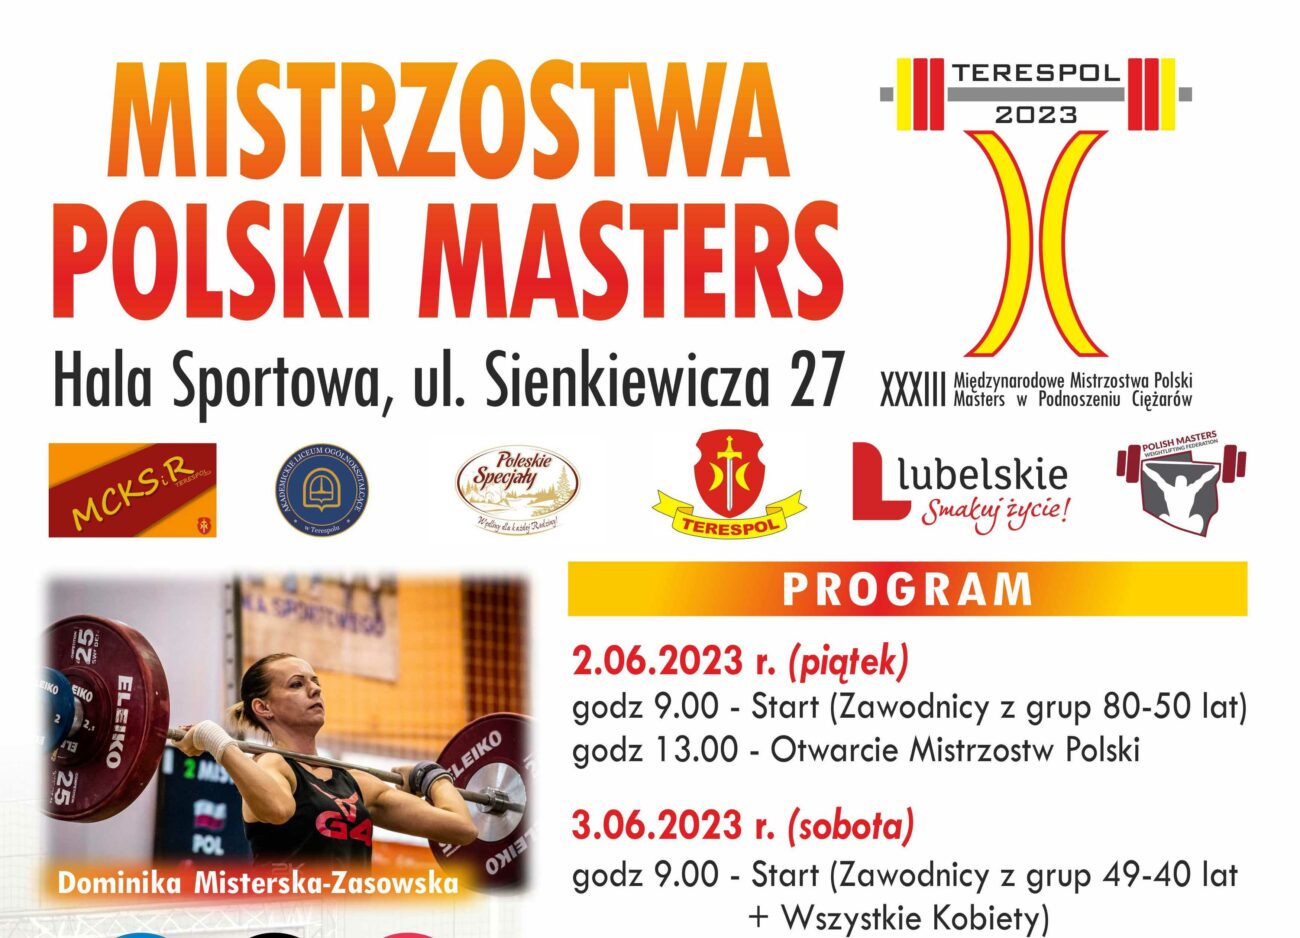 Terespol: 33. Międzynarodowe Mistrzostwa Polski Masters w Podnoszeniu Ciężarów – zapowiedź